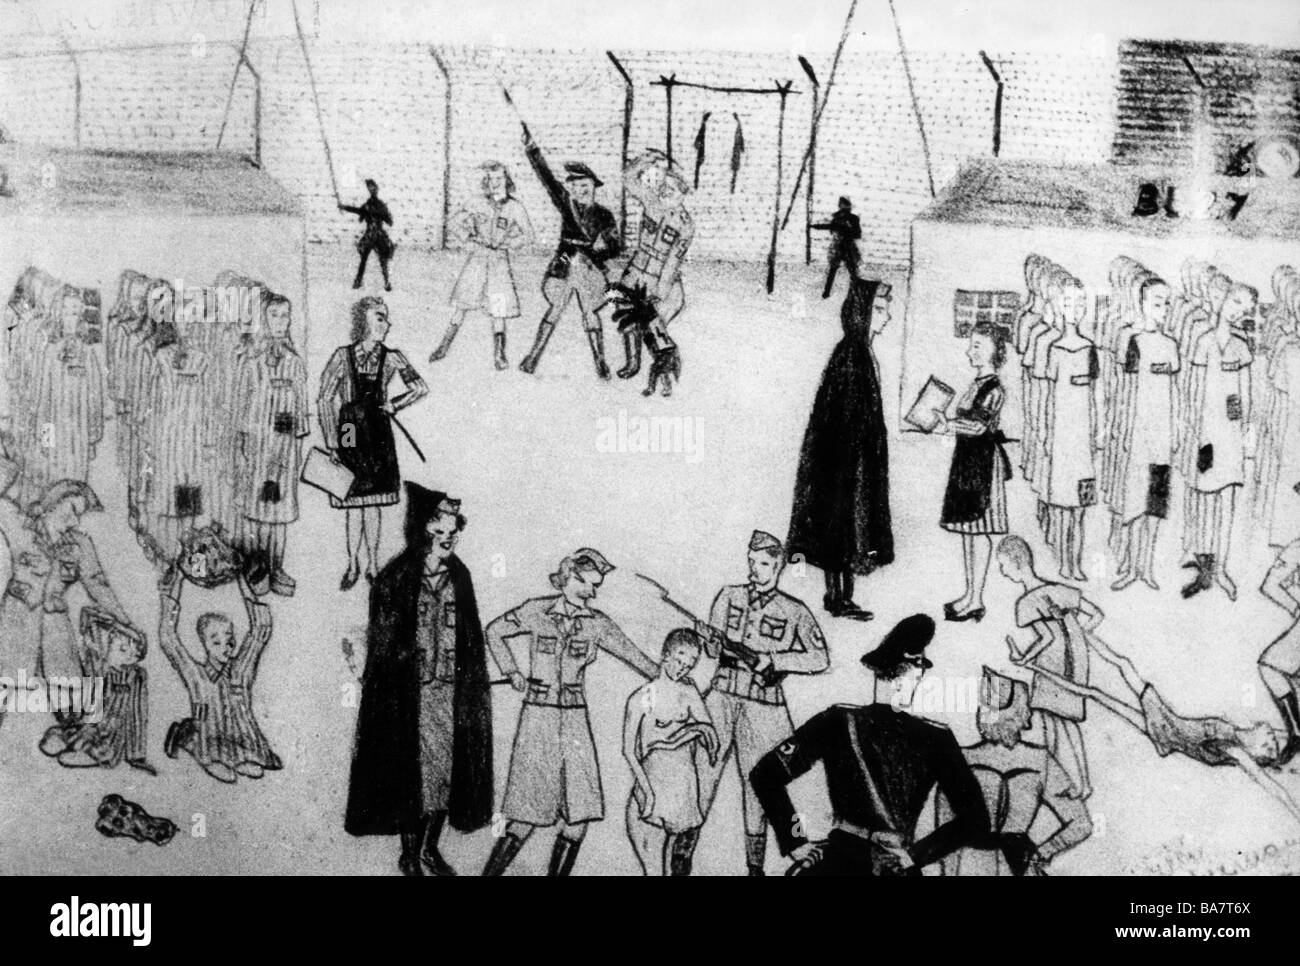 Nazismo / nazionalsocialismo, crimini, campi di concentramento, Auschwitz, Polonia, maltrattamenti di prigionieri, disegno di un bambino prigioniero, circa 1943, Foto Stock